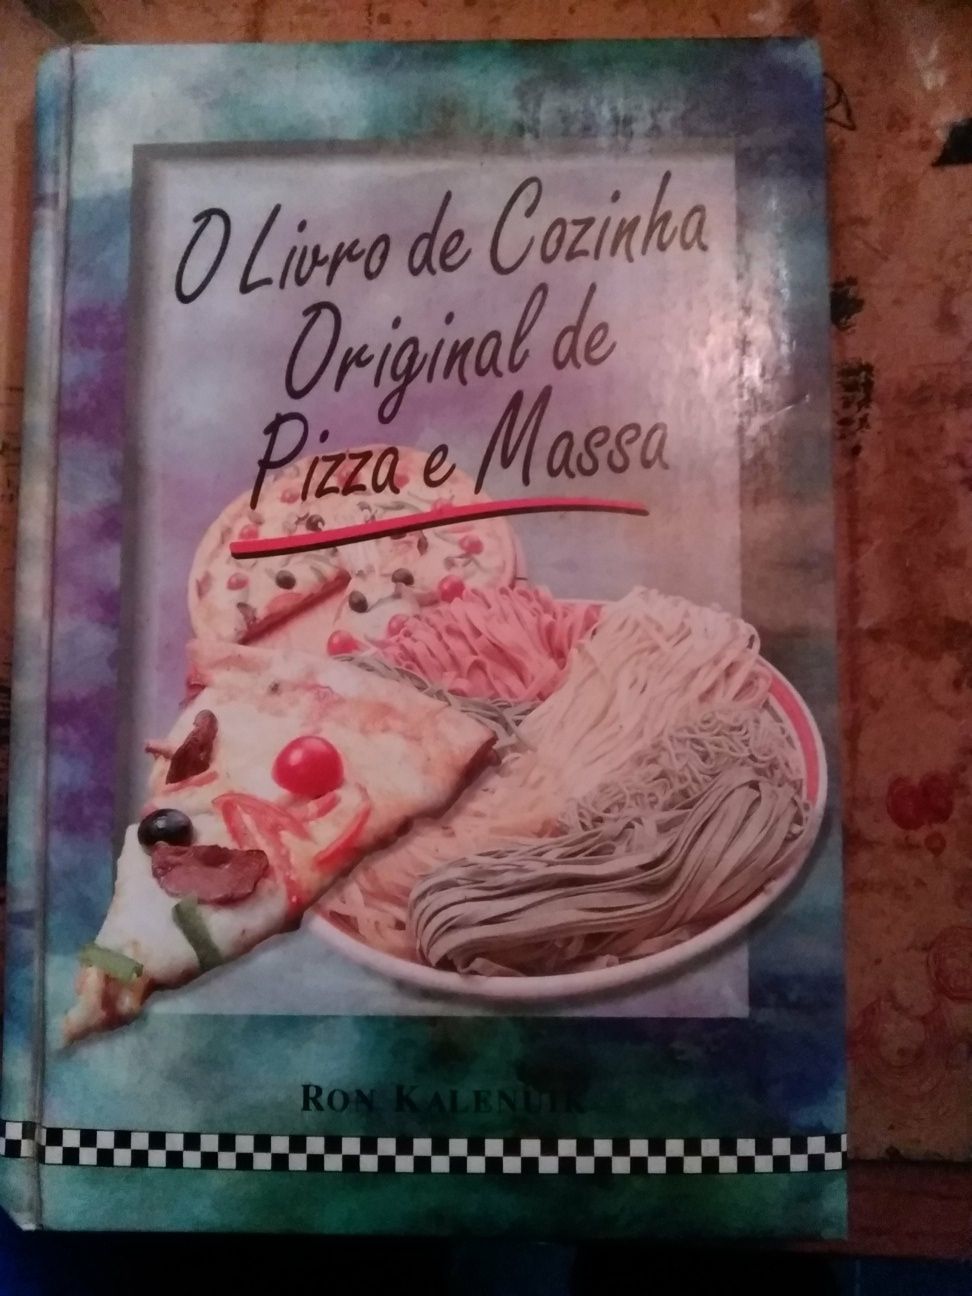 Vendo livro de receitas sobre Pizza e Massa